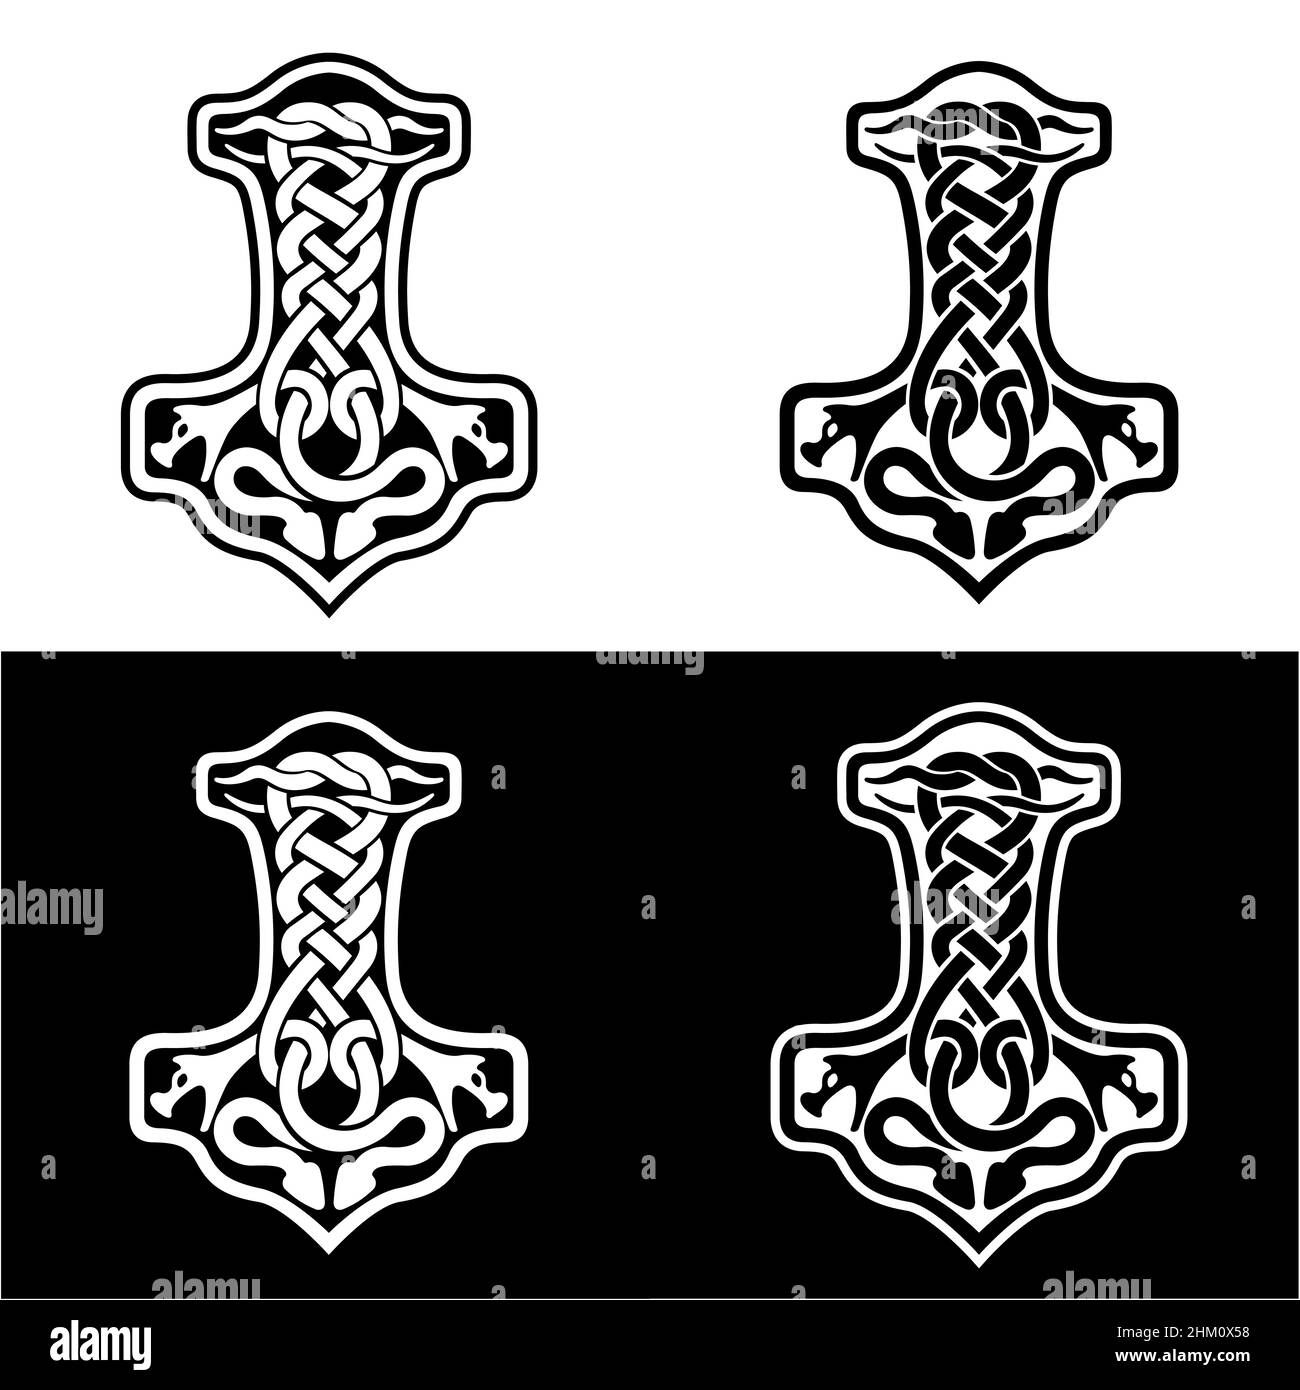 Hammer von Thor Mjolnir keltischer Knoten, skandinavischer Wikinger-Stil Ornament. Handzeichensatz. Isolierte Vektordarstellung. Stock Vektor